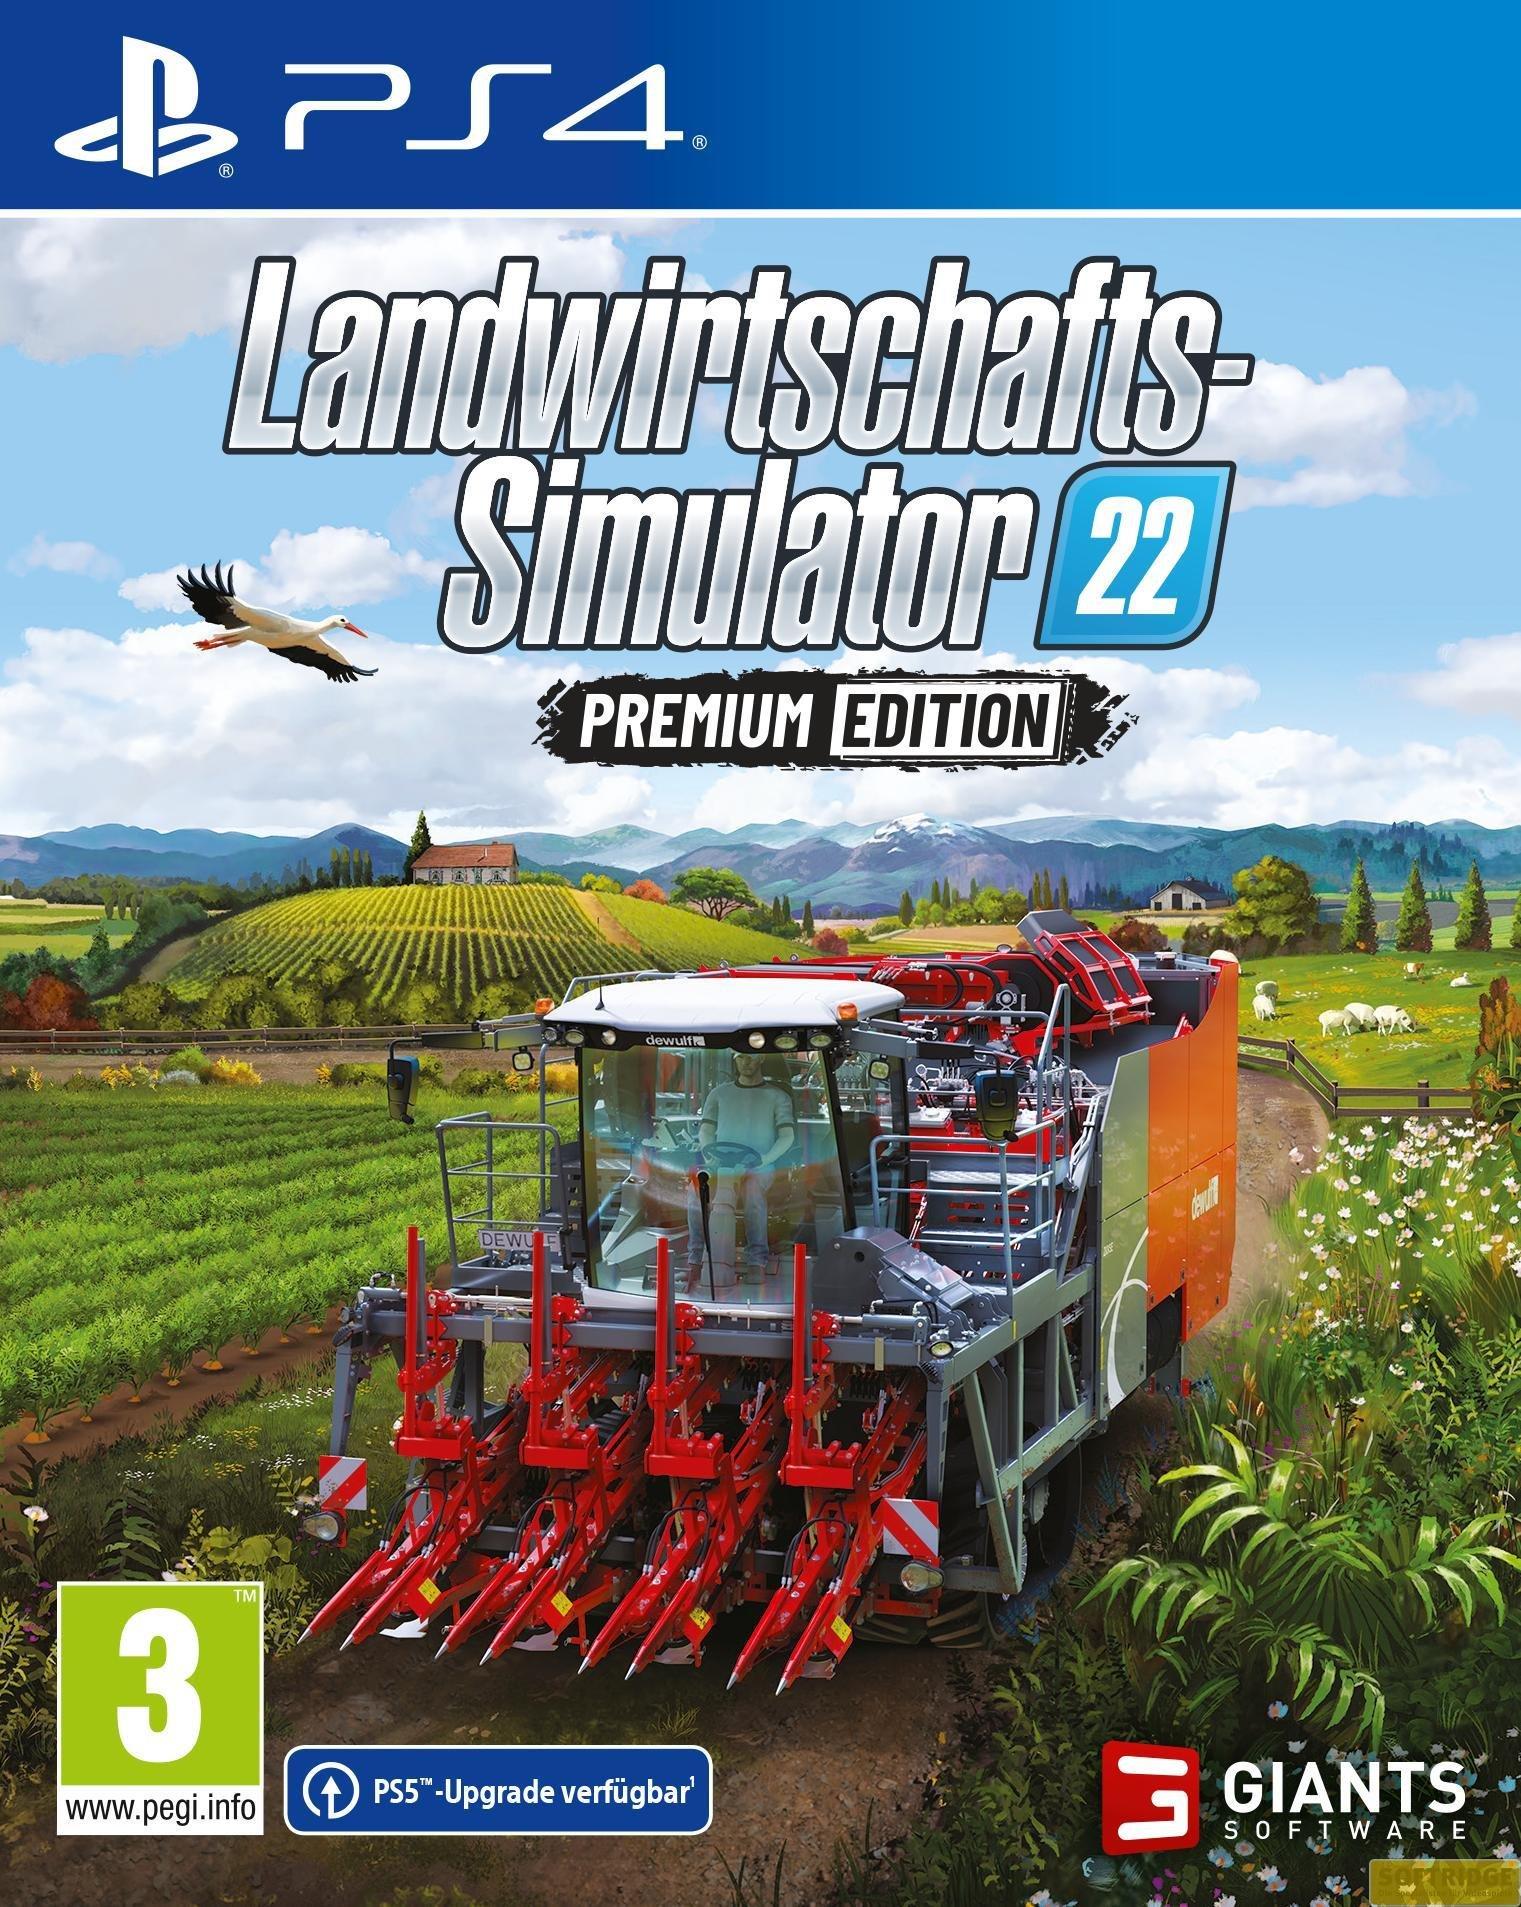 Giants Software  Landwirtschafts-Simulator 22 - Premium Edition 